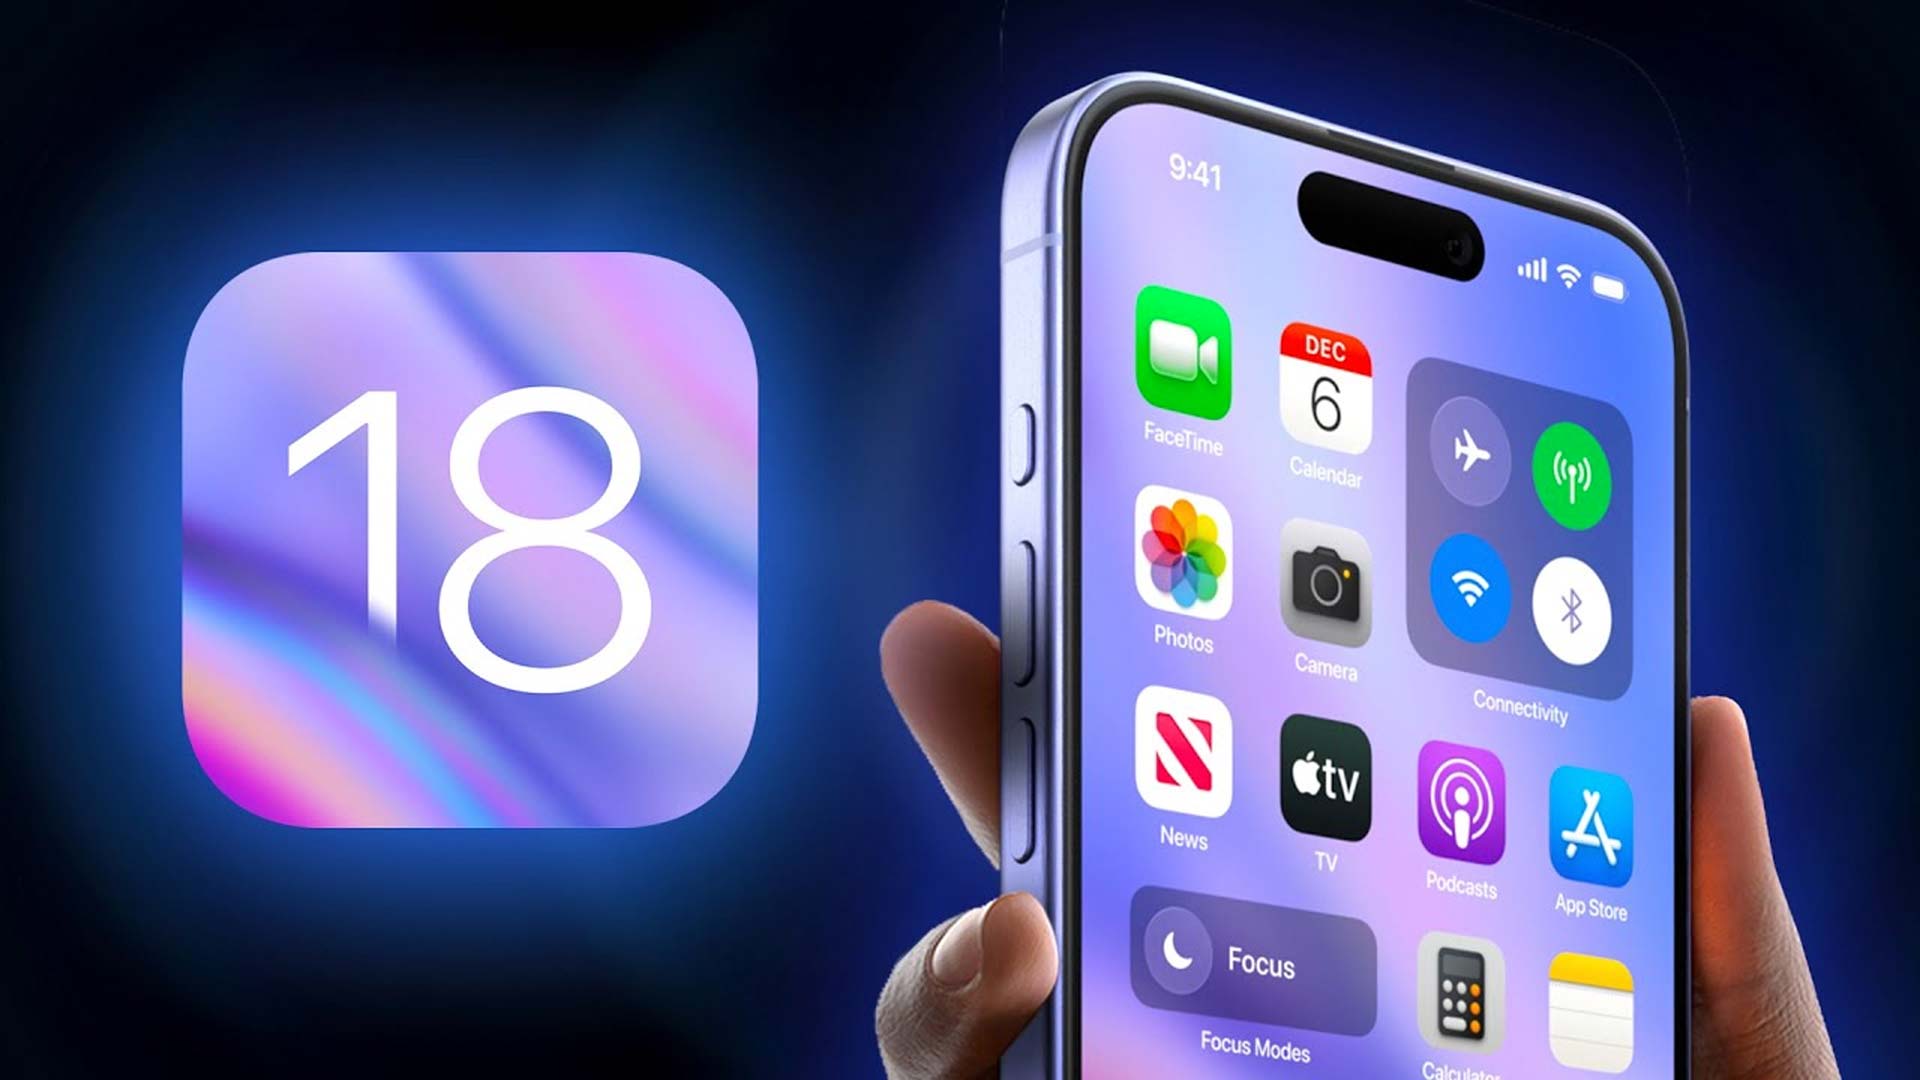 Apple stellt iOS 18 Beta 5 vor: Die wichtigsten Änderungen